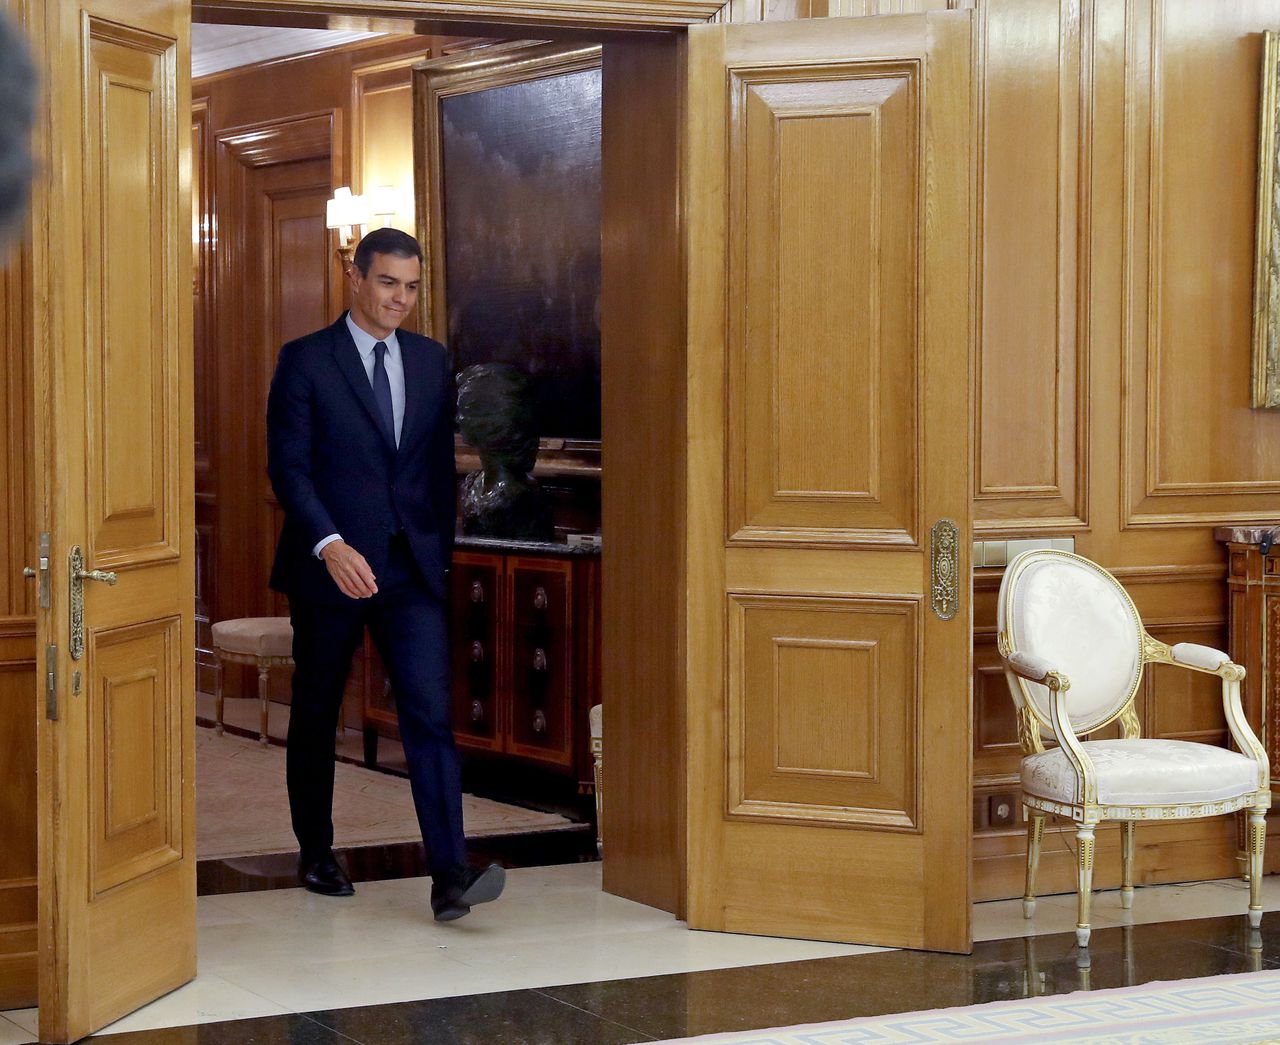 Premier Pedro Sánchez brengt een bezoek aan de koning. Dinsdag werd bekend dat in november weer verkiezingen worden gehouden in Spanje.